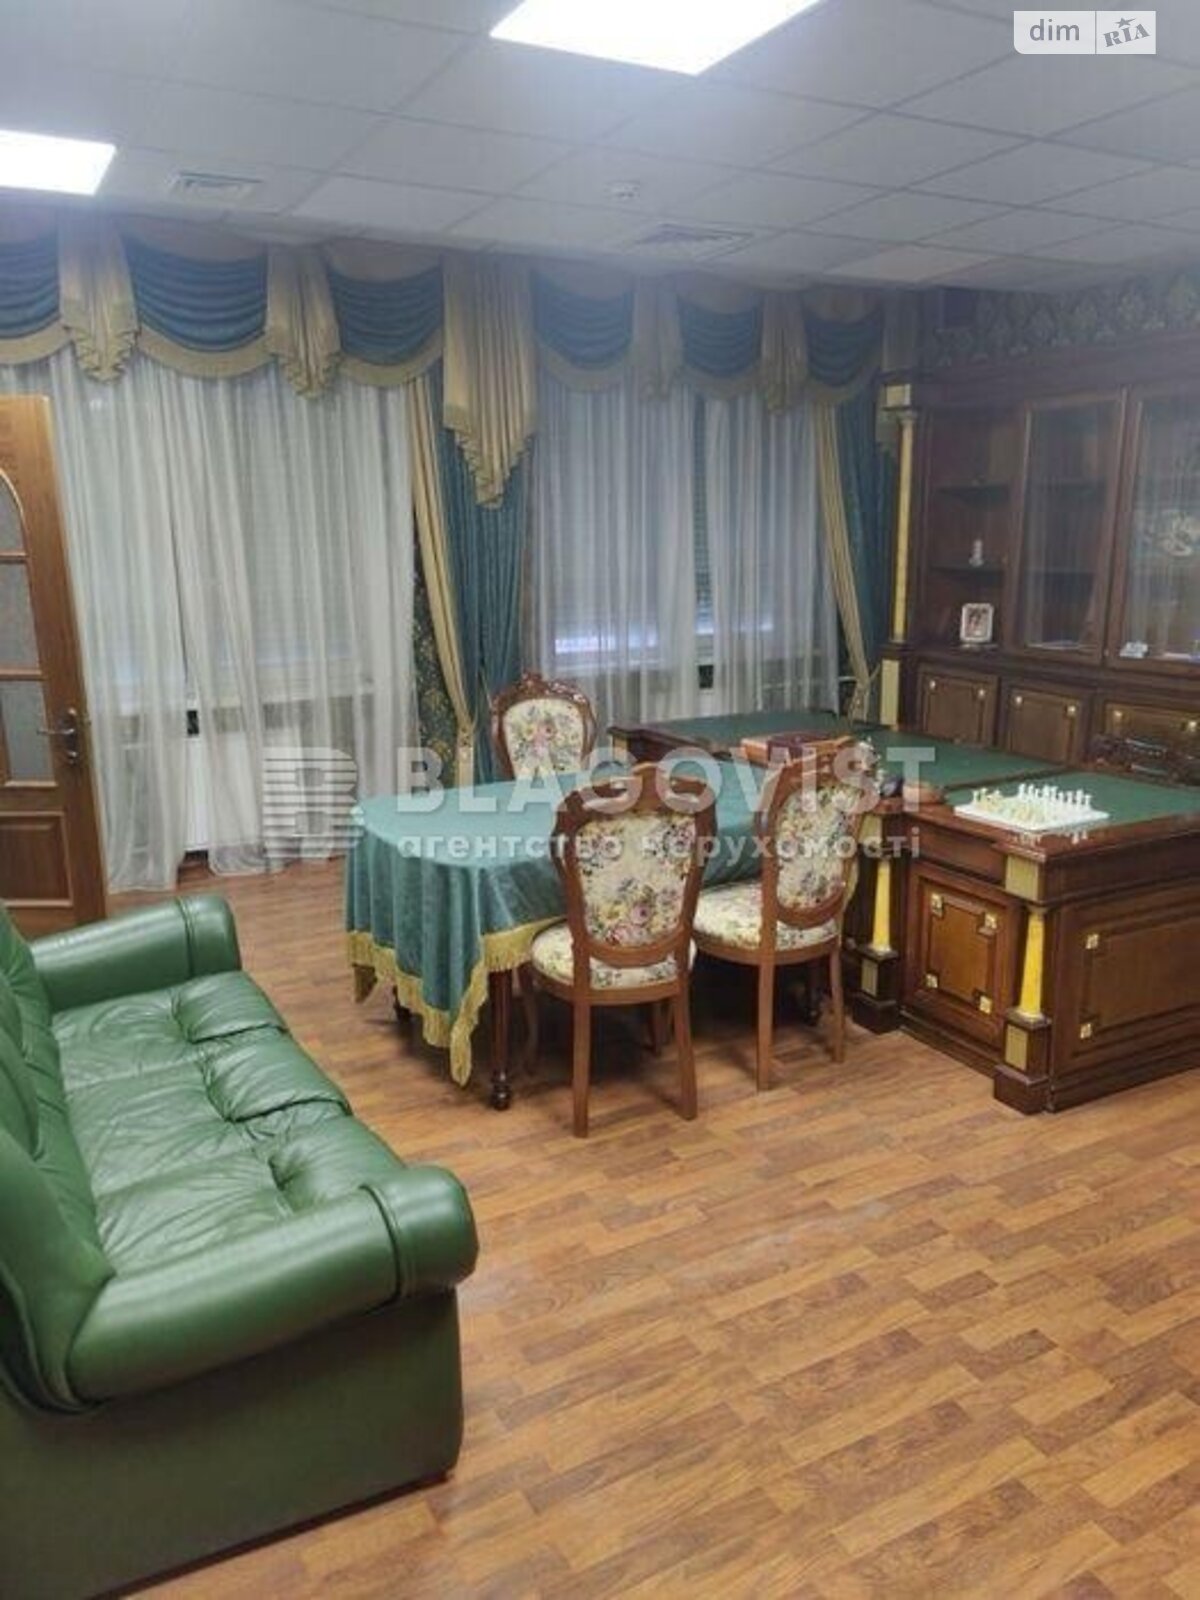 Офисное помещение на 385 кв.м. в Киеве фото 1